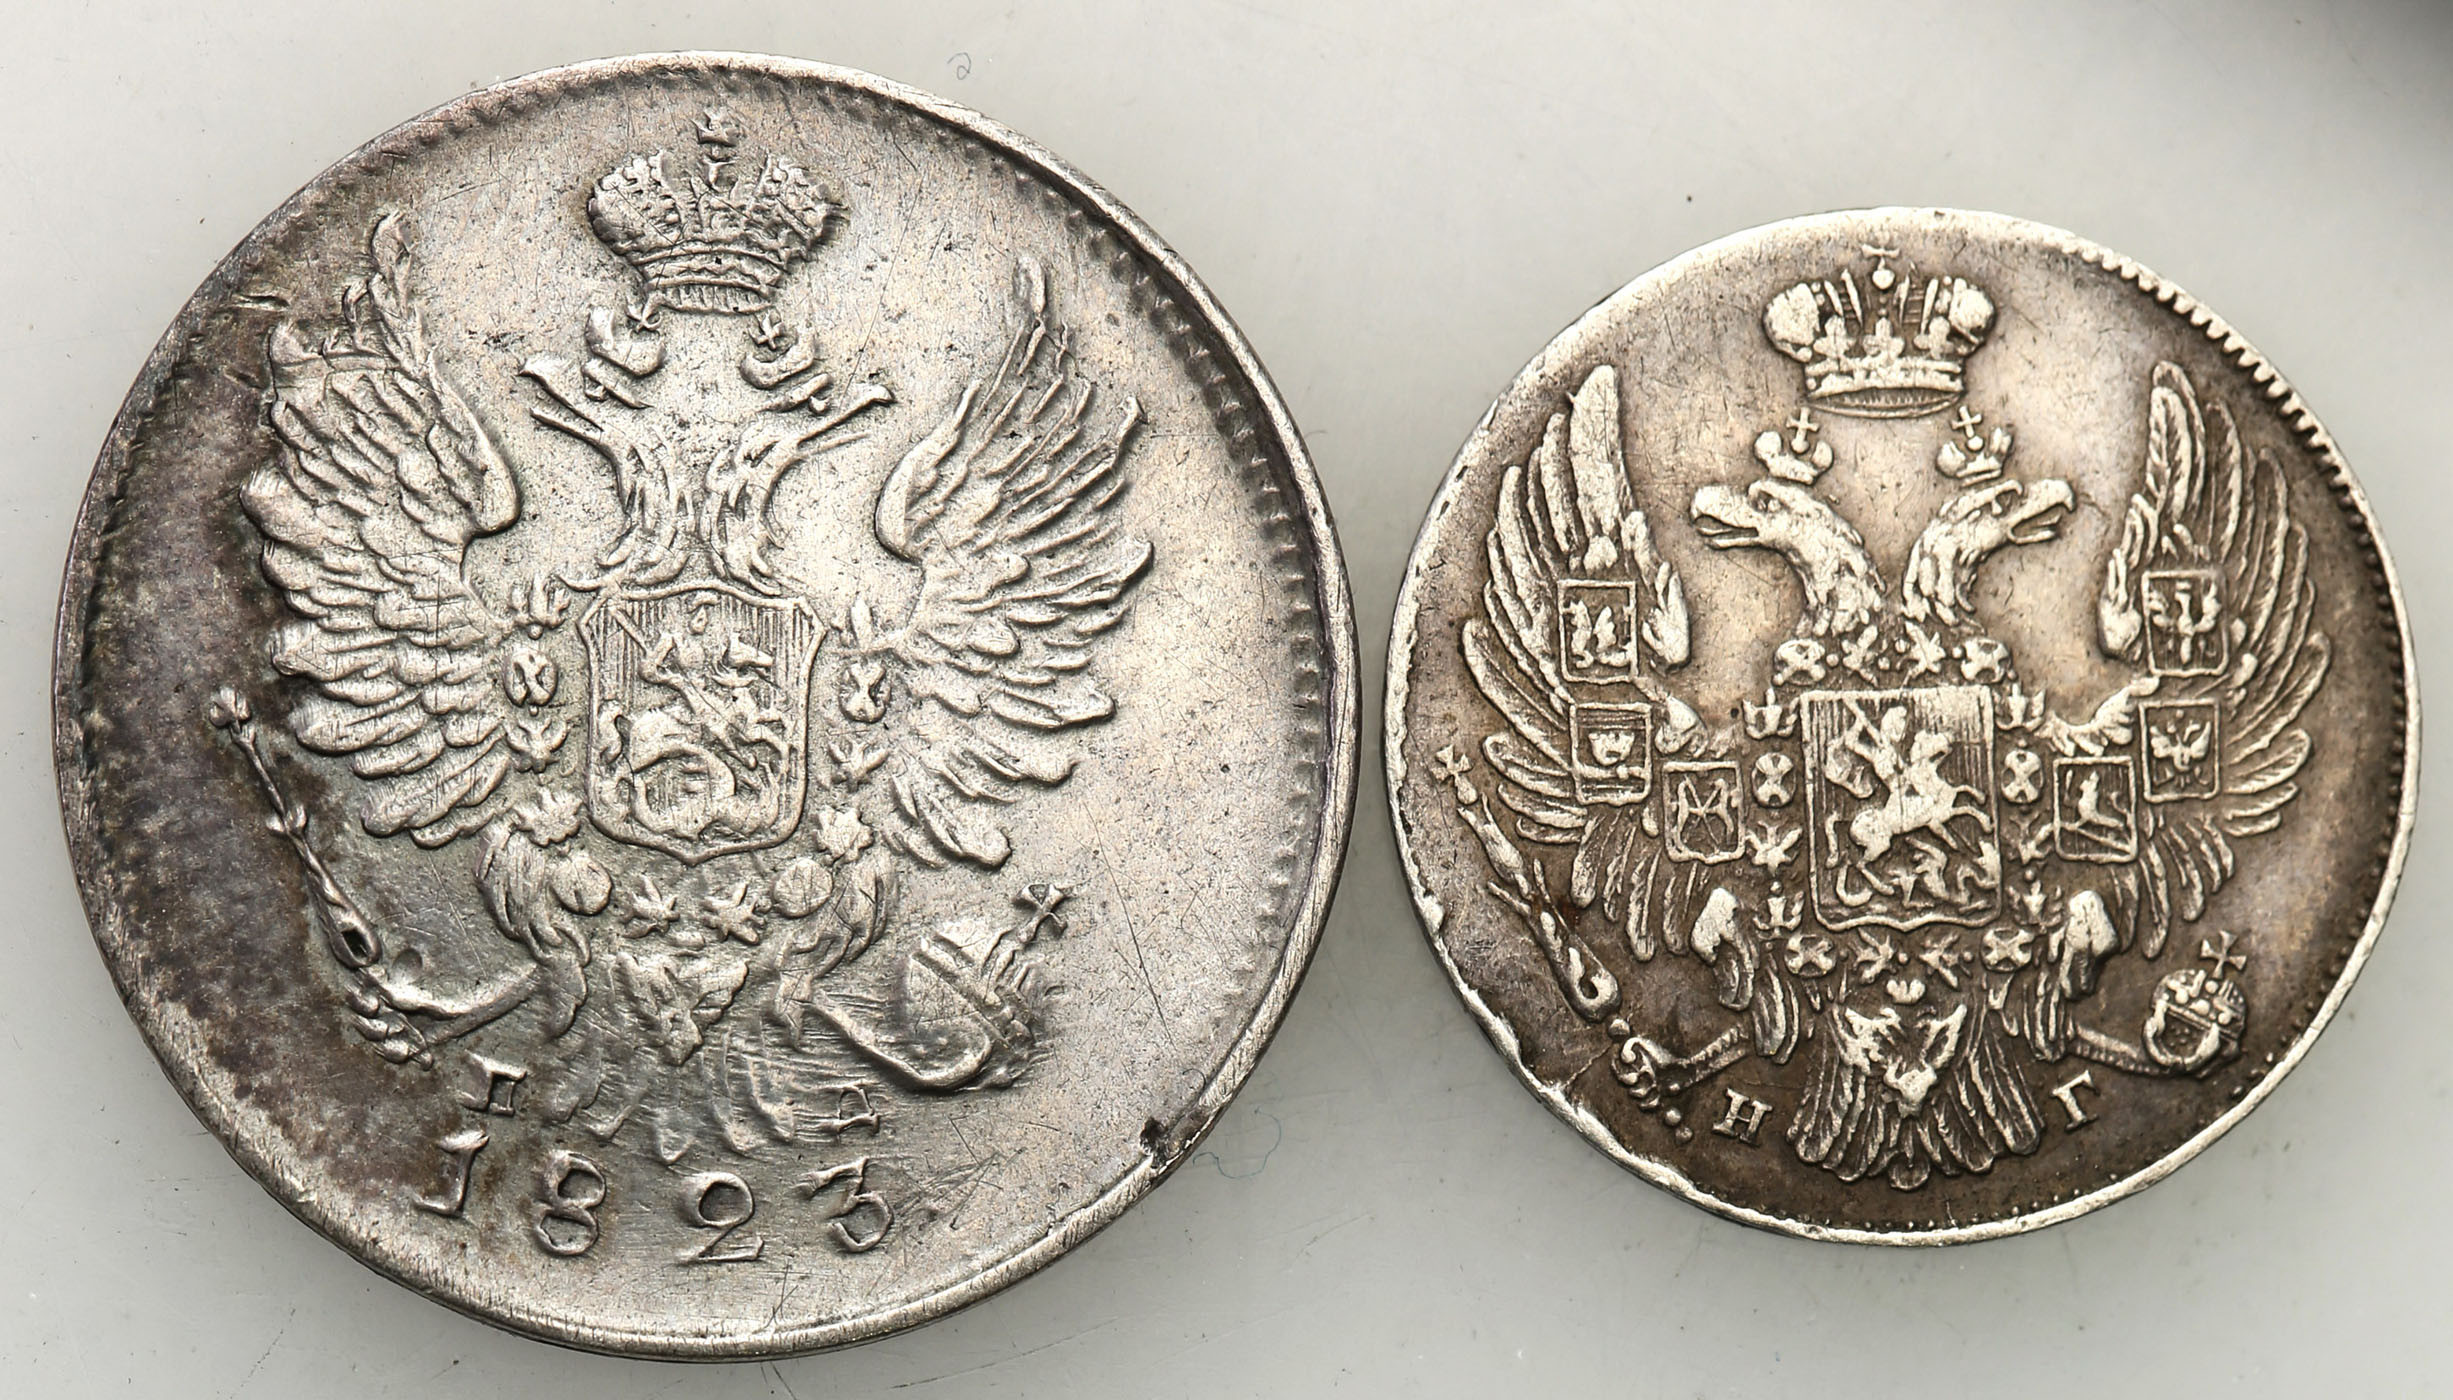 Rosja. Aleksander I, Mikołaj I. 10 kopiejek 1833, 20 kopiejek 1823 - zestaw 2 monet